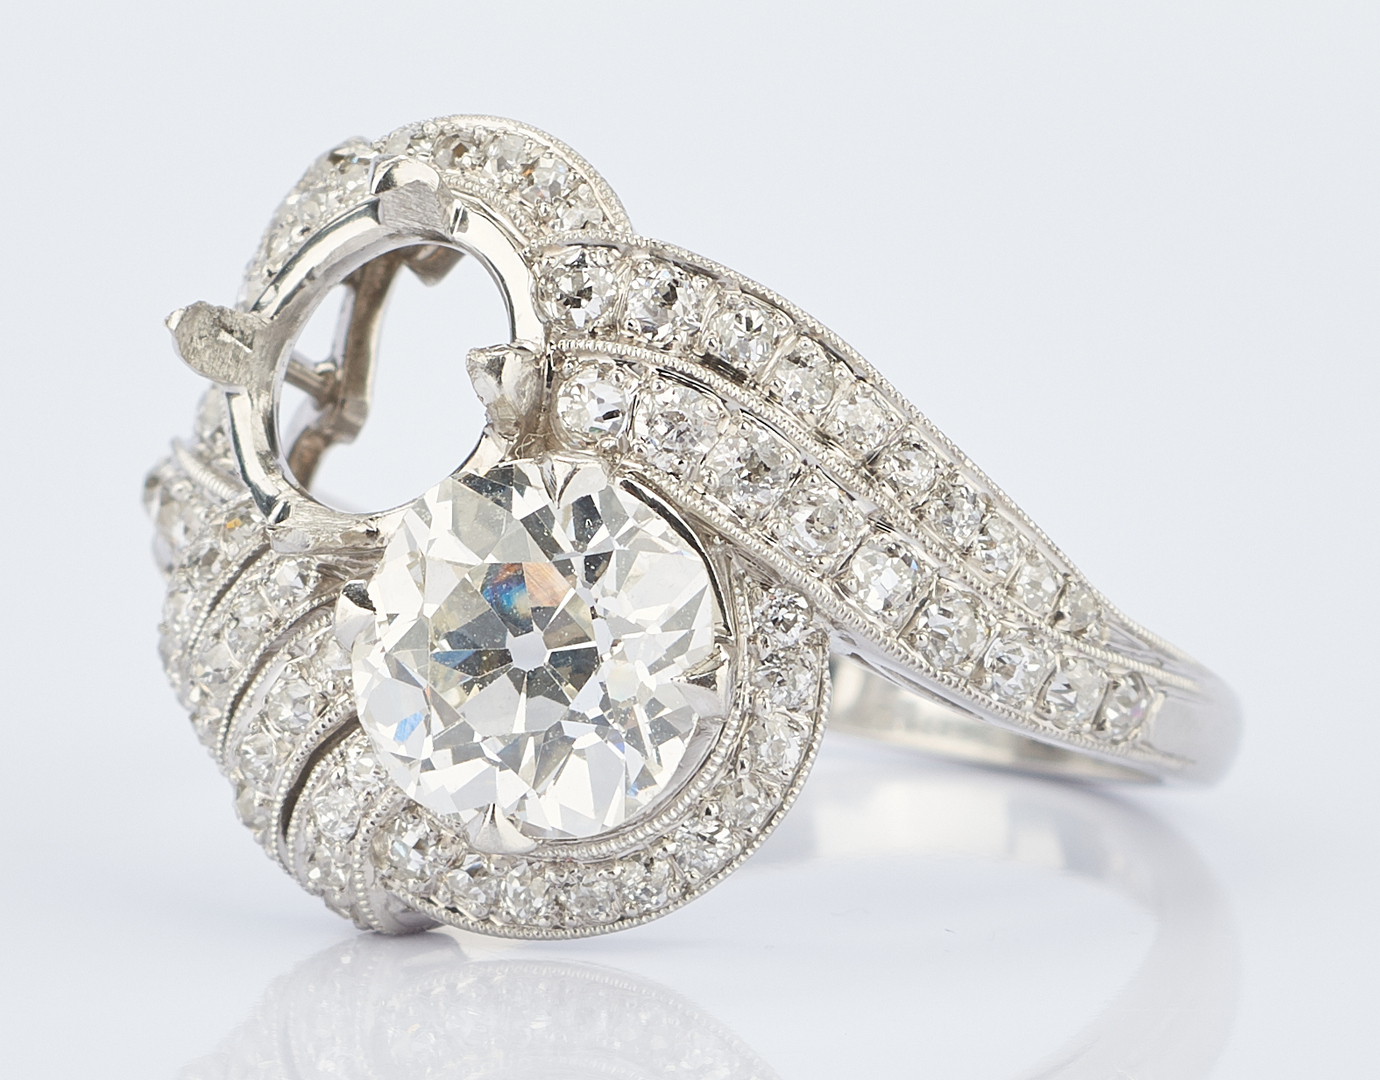 Lot 217: Ladies Platinum Diamond Ring, 1.8 Carats